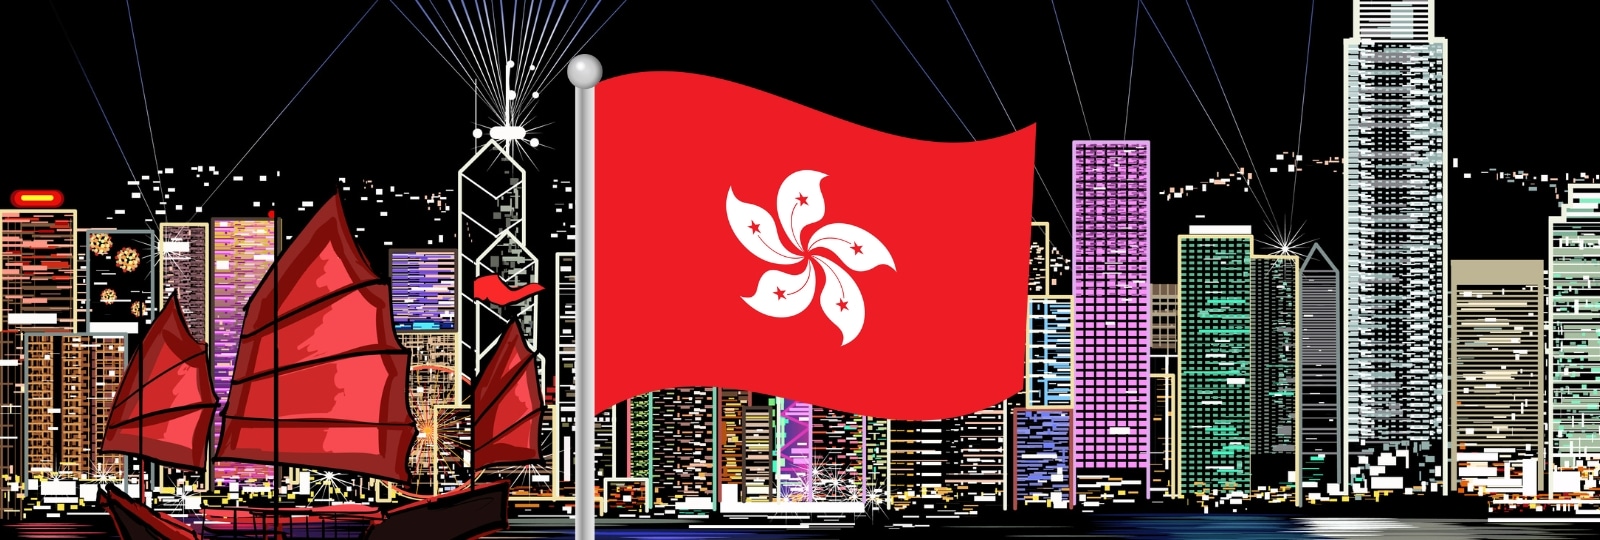 Hong Kong to disclose names of license applicants